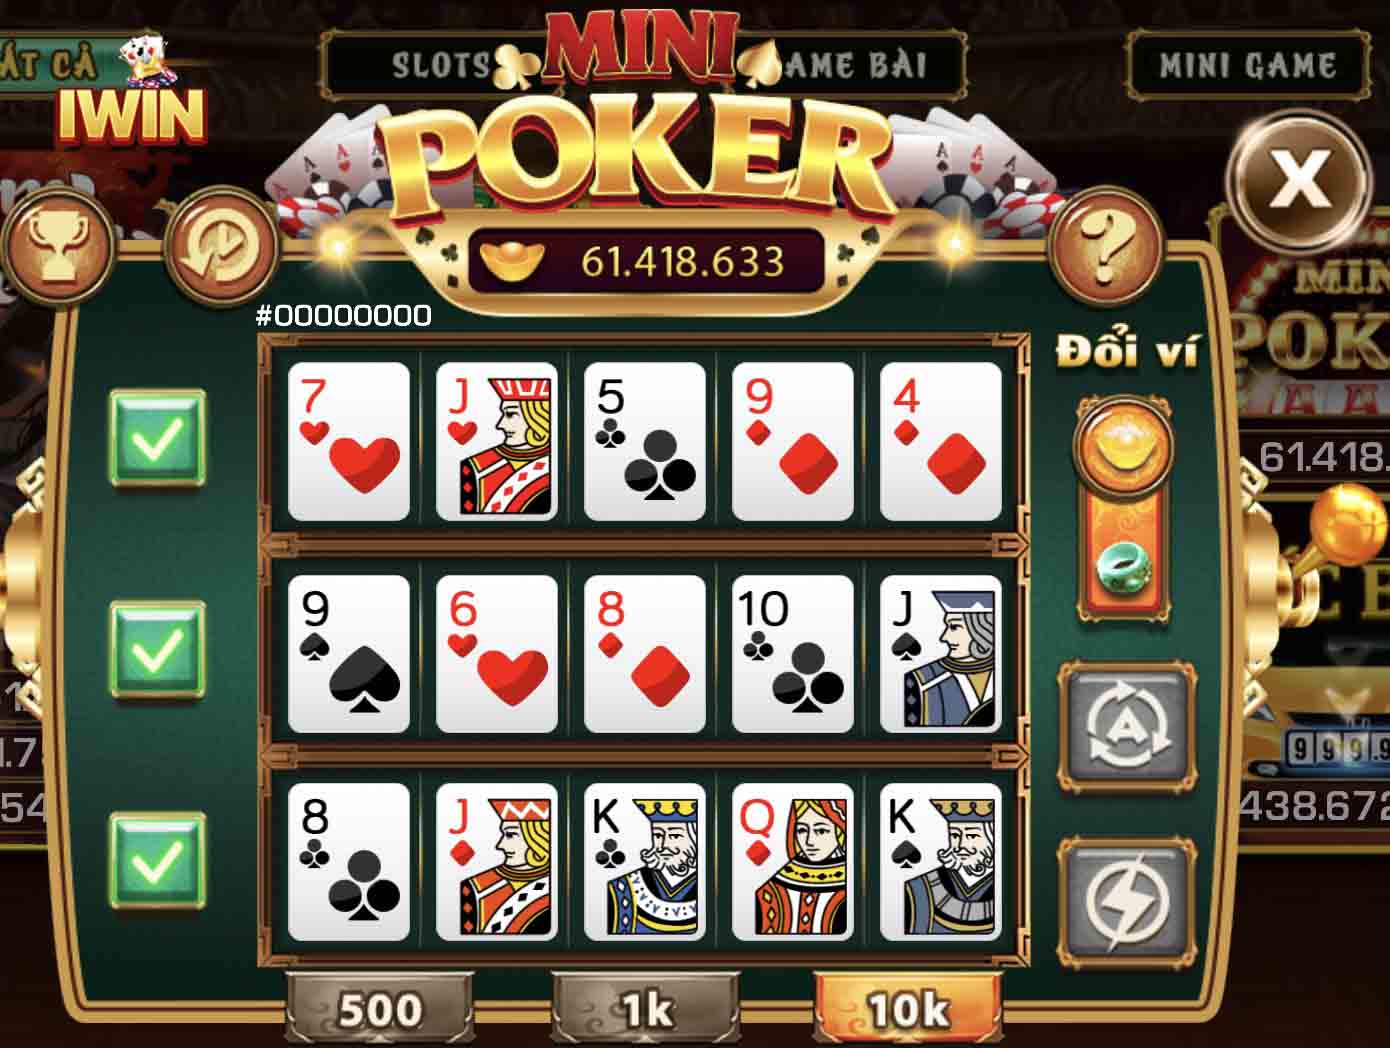 Mini game Poker Iwin